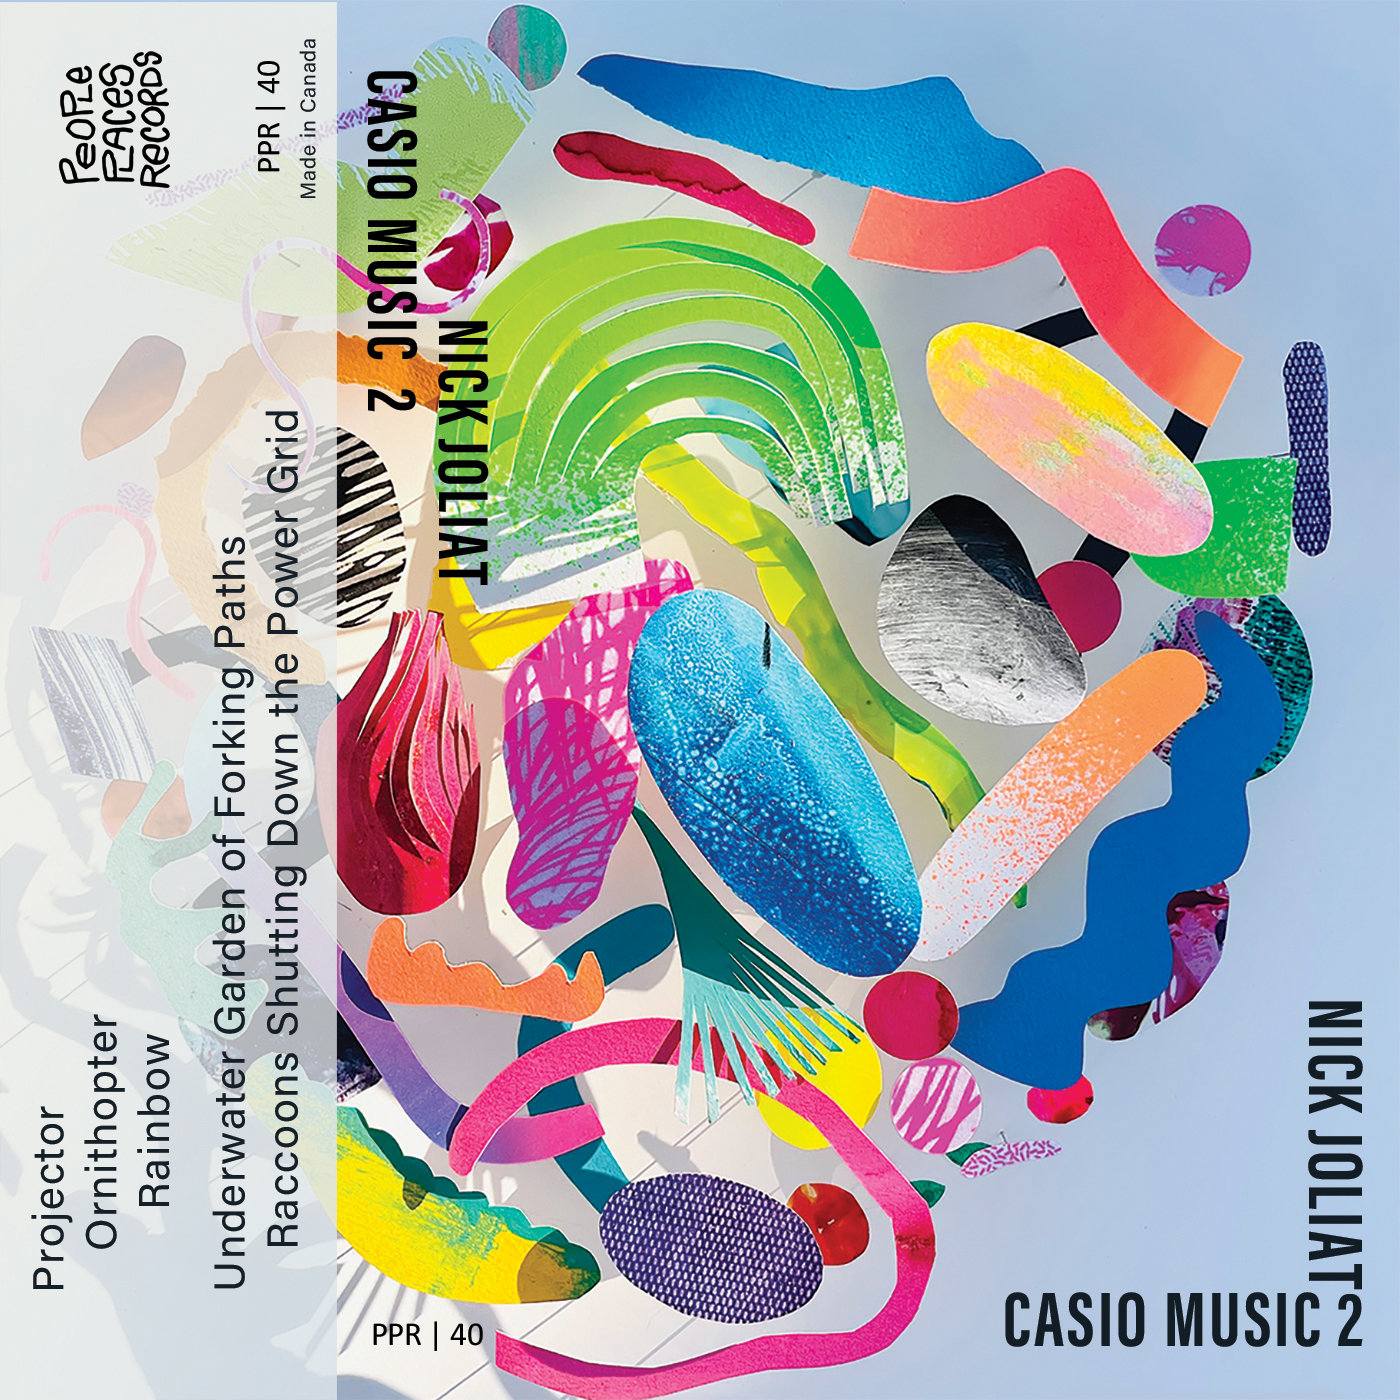 Casio Music 2, Nick Joliat